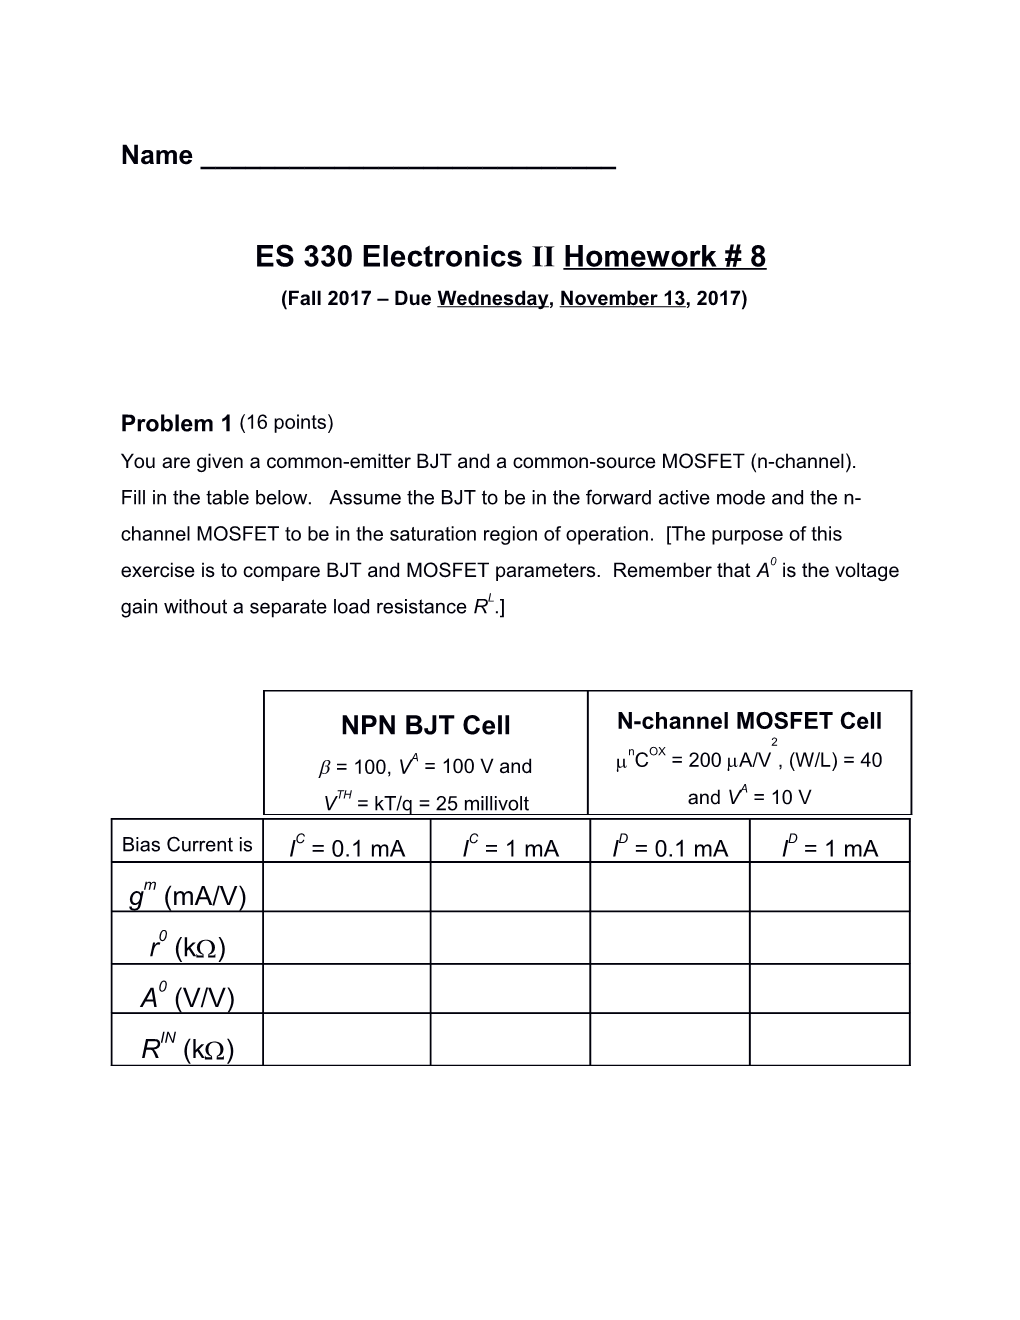 ES 330 Electronics Iihomework #8